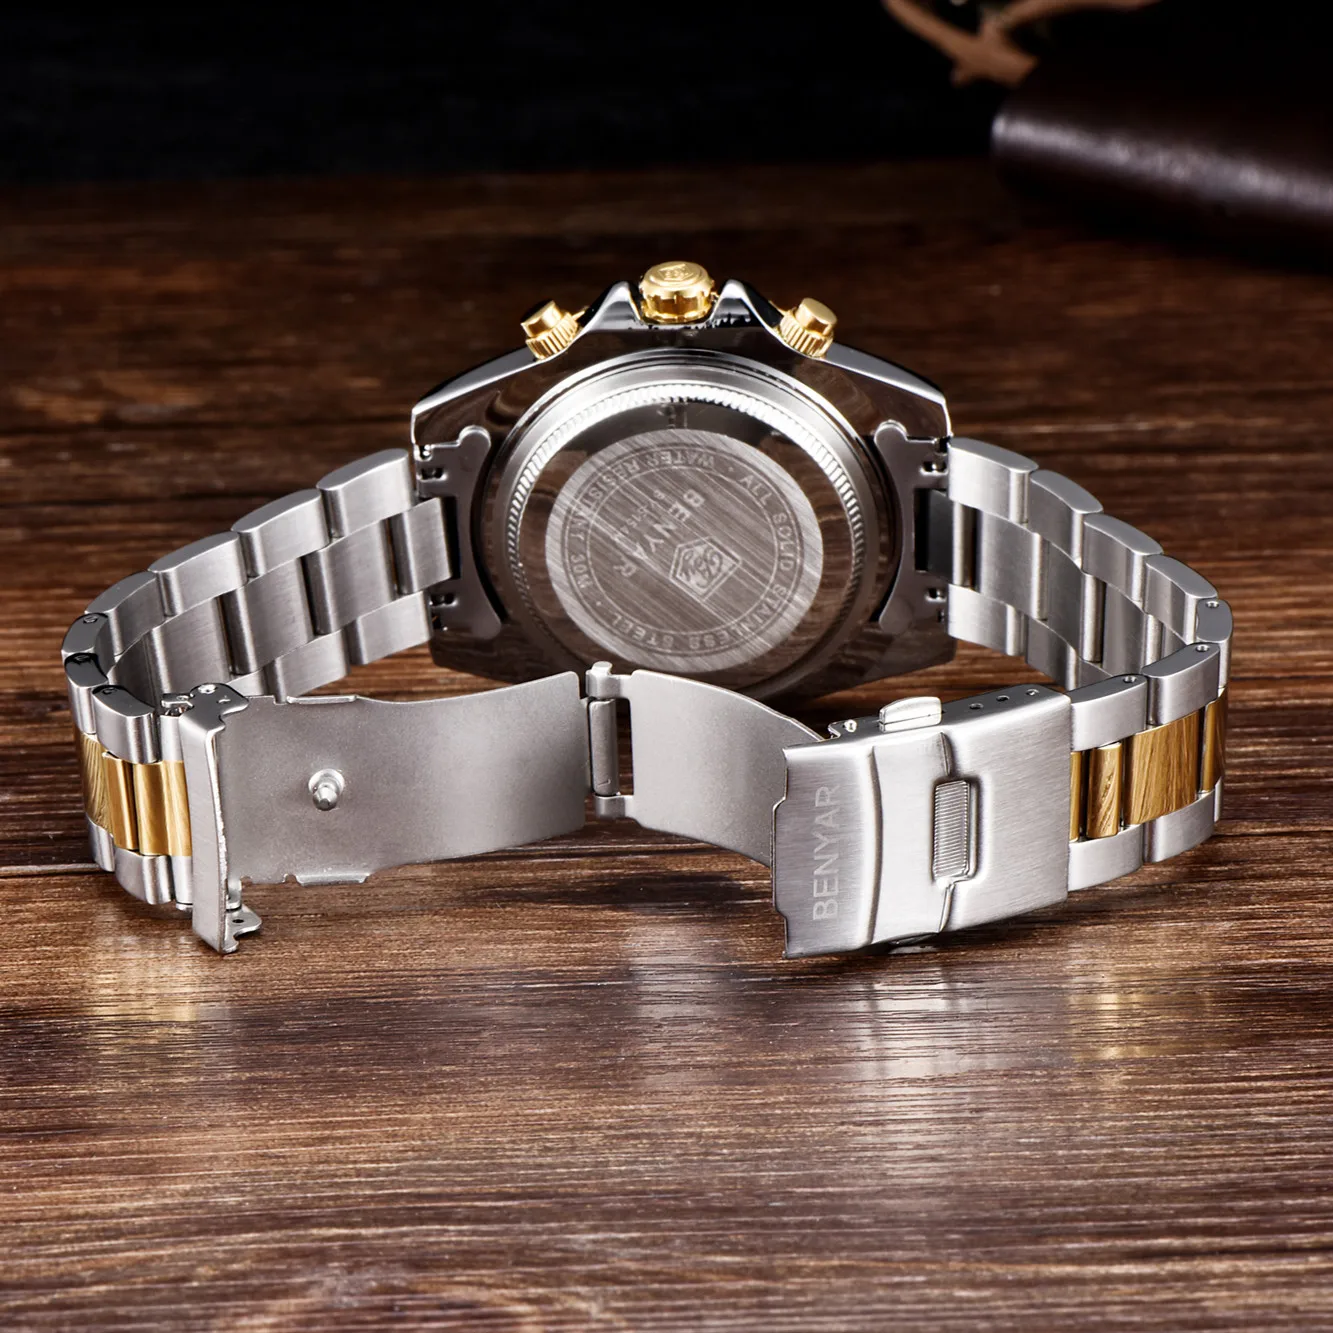 BENYAR мужские повседневные спортивные часы Топ бренд Роскошные армейские военные мужские наручные часы из нержавеющей стали Relogio Masculino